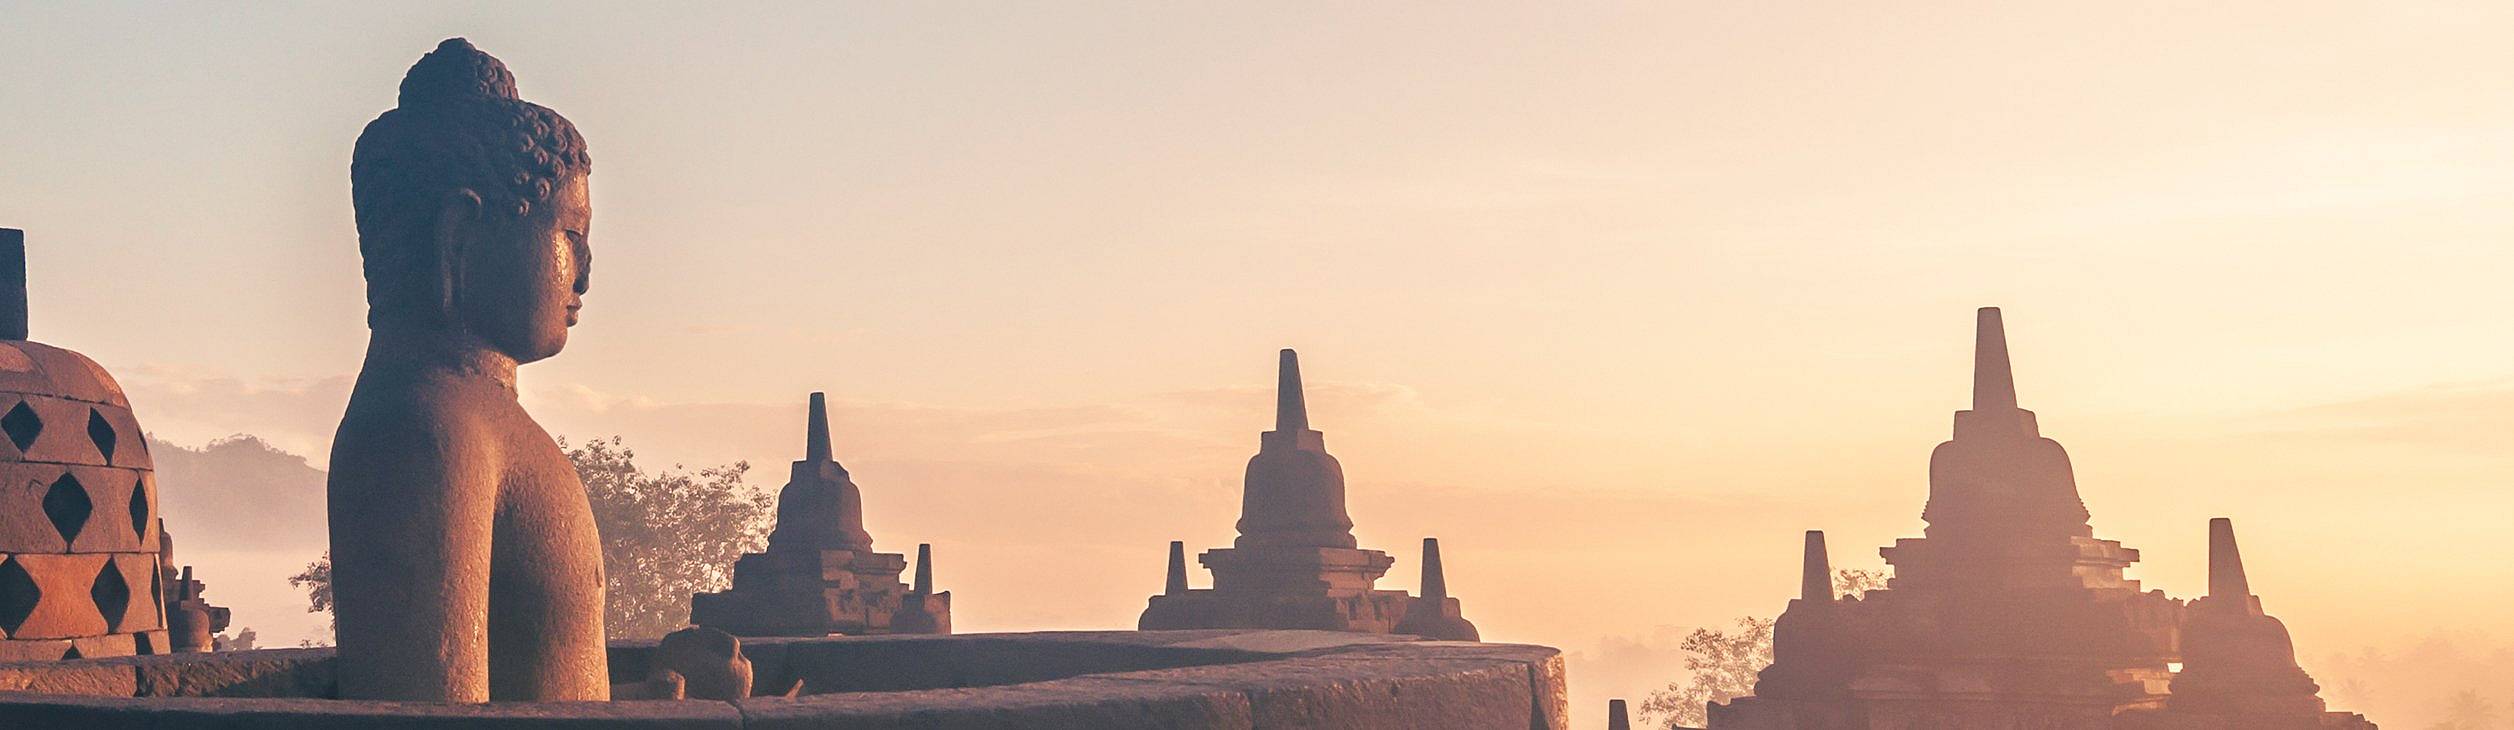 Tempio di Borobudur al sorgere del sole